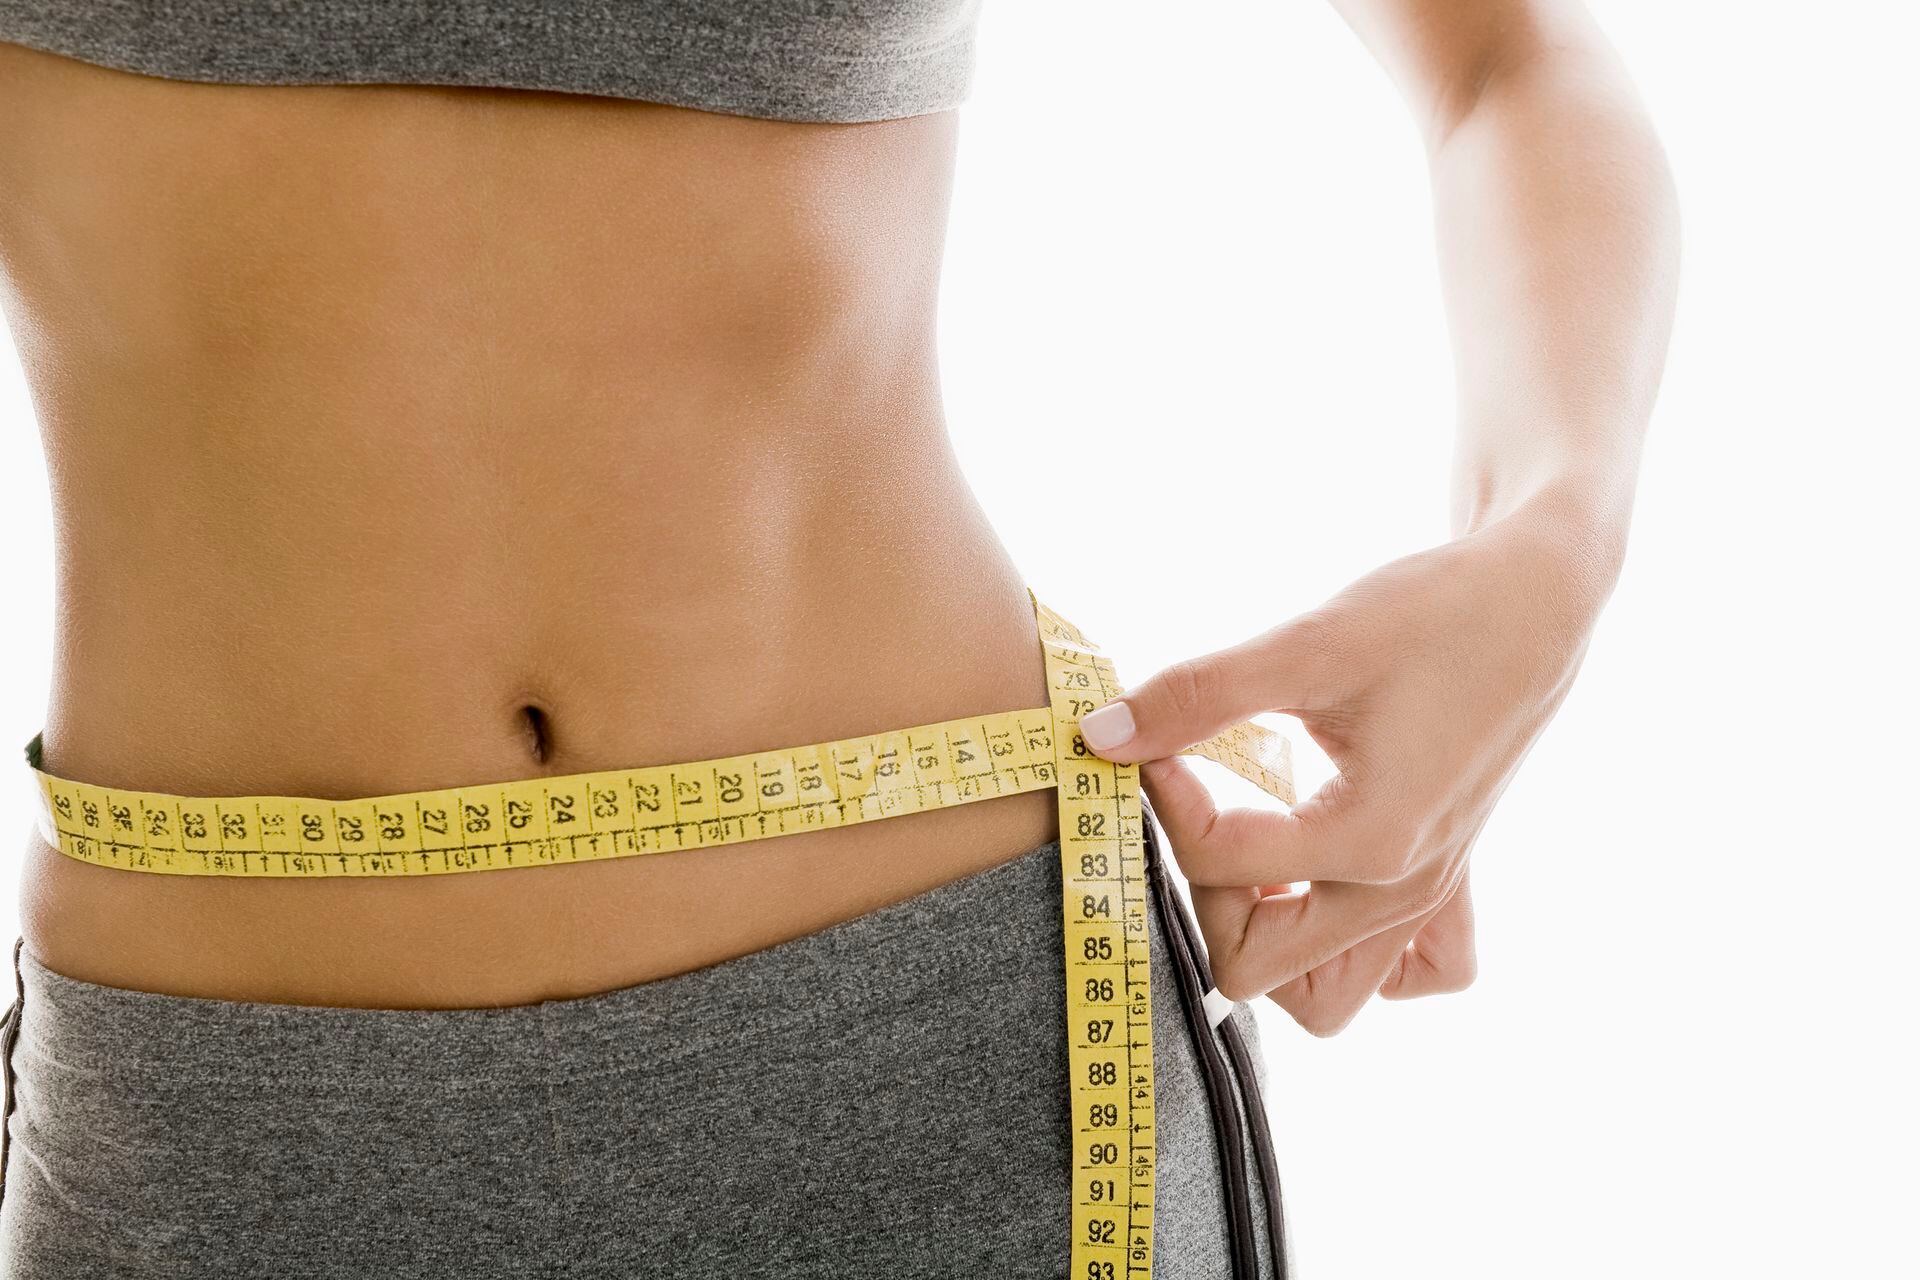 La dieta saludable de las 1.200 calorías para perder peso